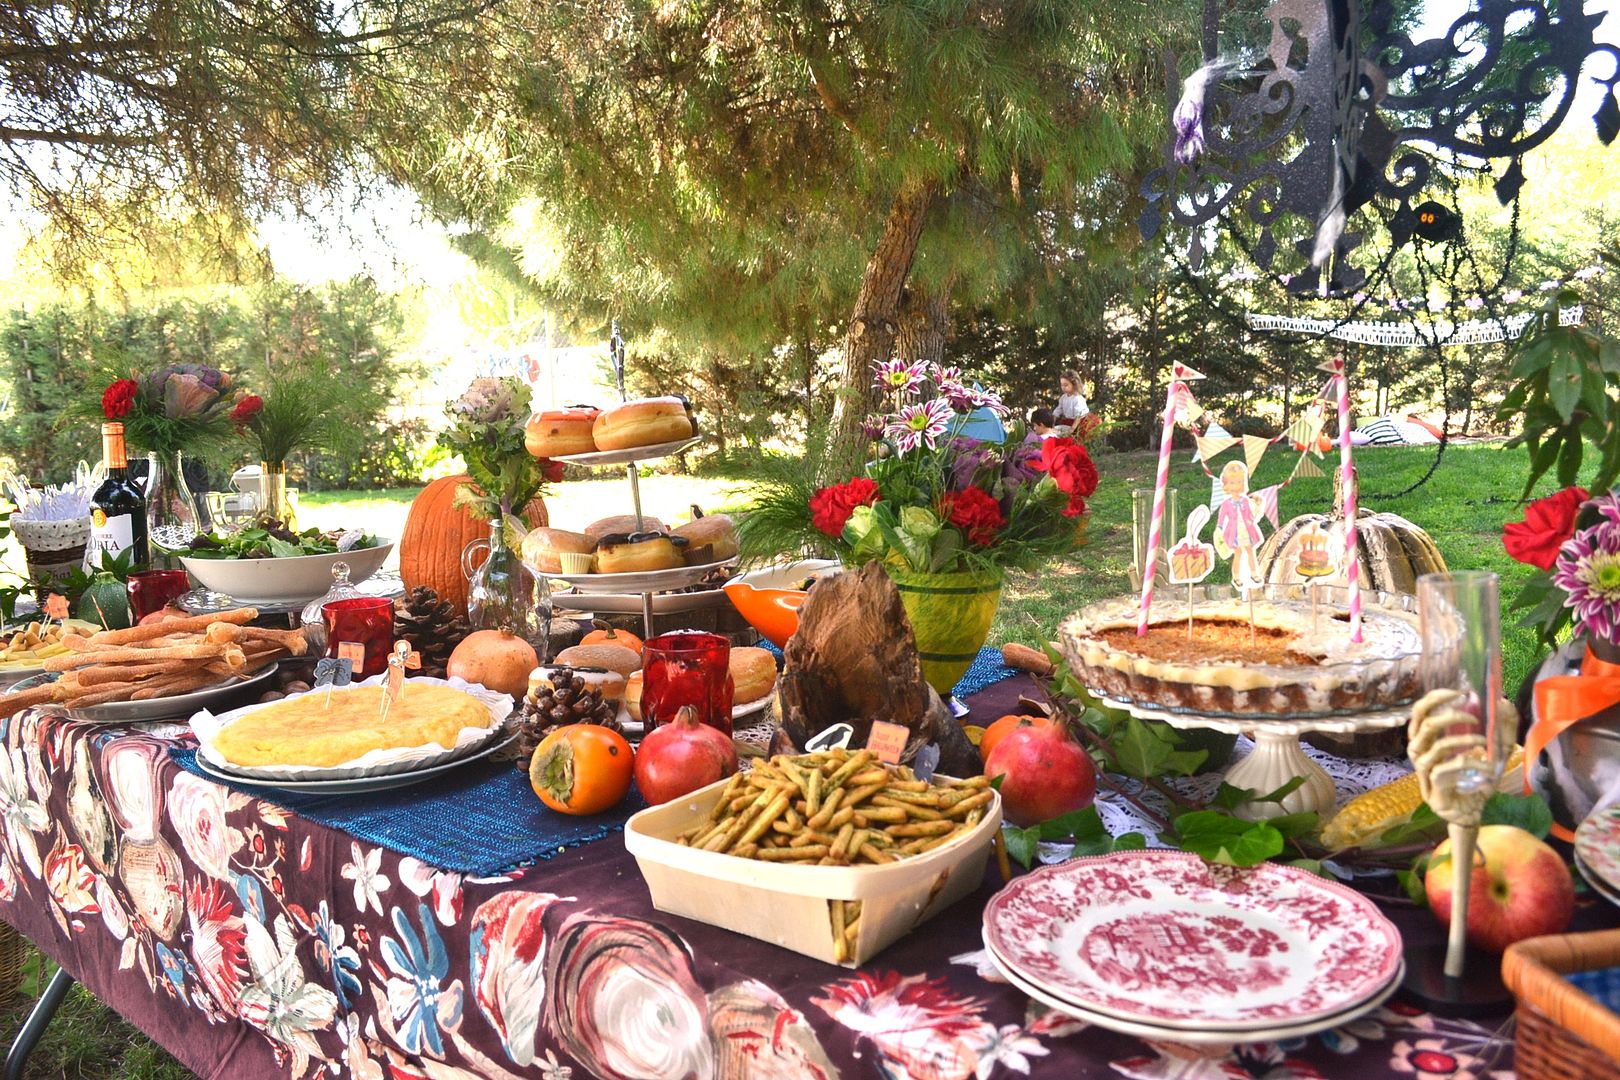  picnic en el parque mesa con mantel verduras y fruta halloween chic